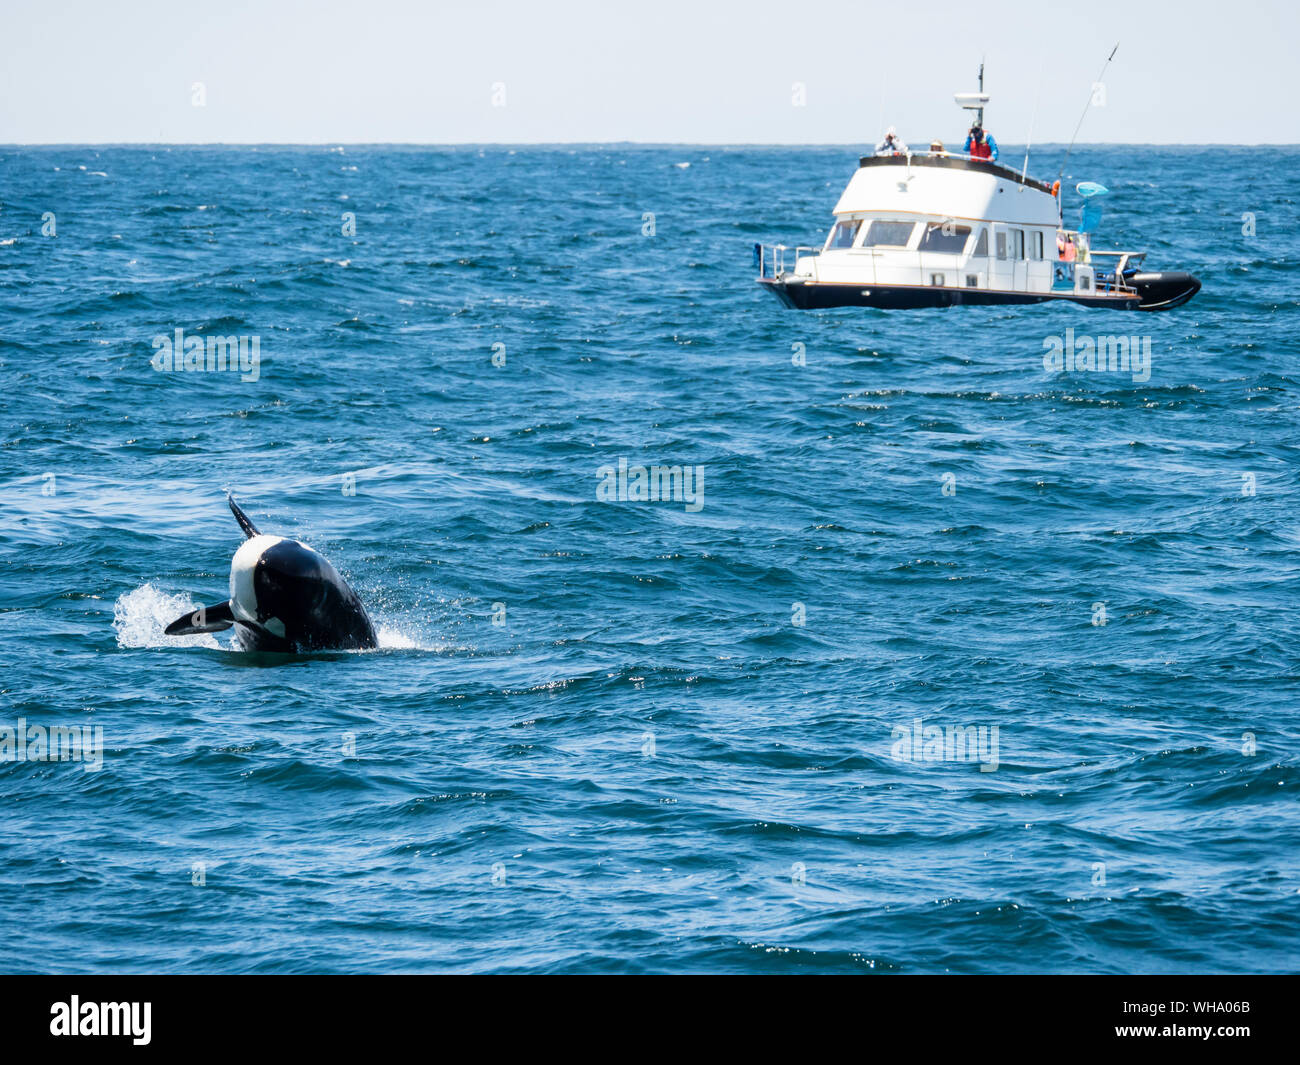 Épaulard (Orcinus orca), violer dans le sanctuaire marin national de la baie de Monterey, Californie, États-Unis d'Amérique, Amérique du Nord Banque D'Images